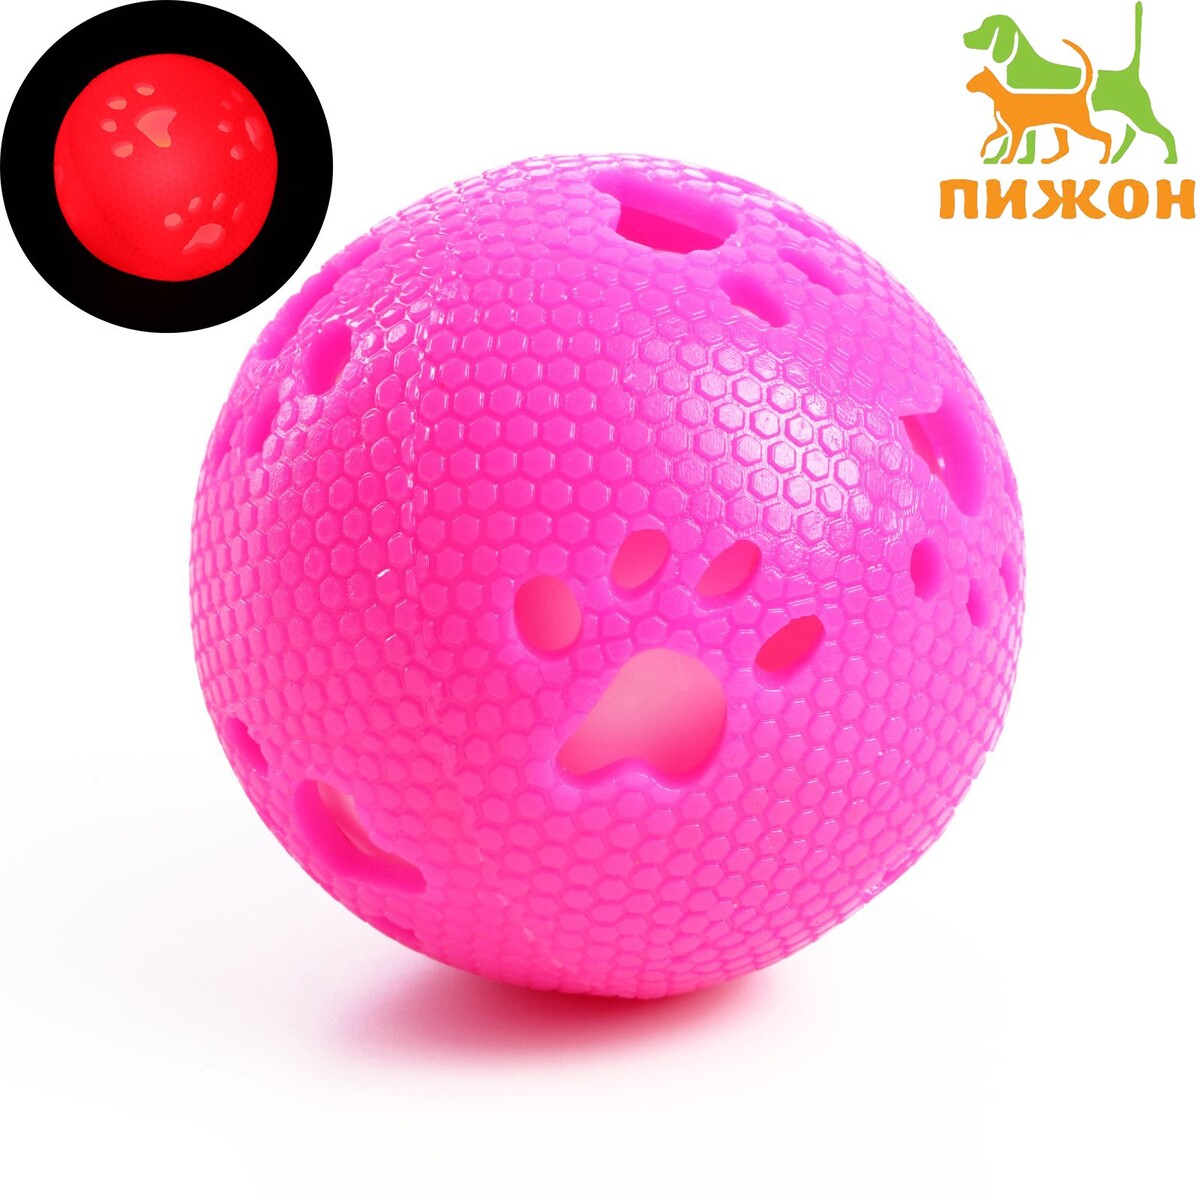 Мячик с лапками светящийся, 7 см, розовый/белый путешествие врача по homo sapiens